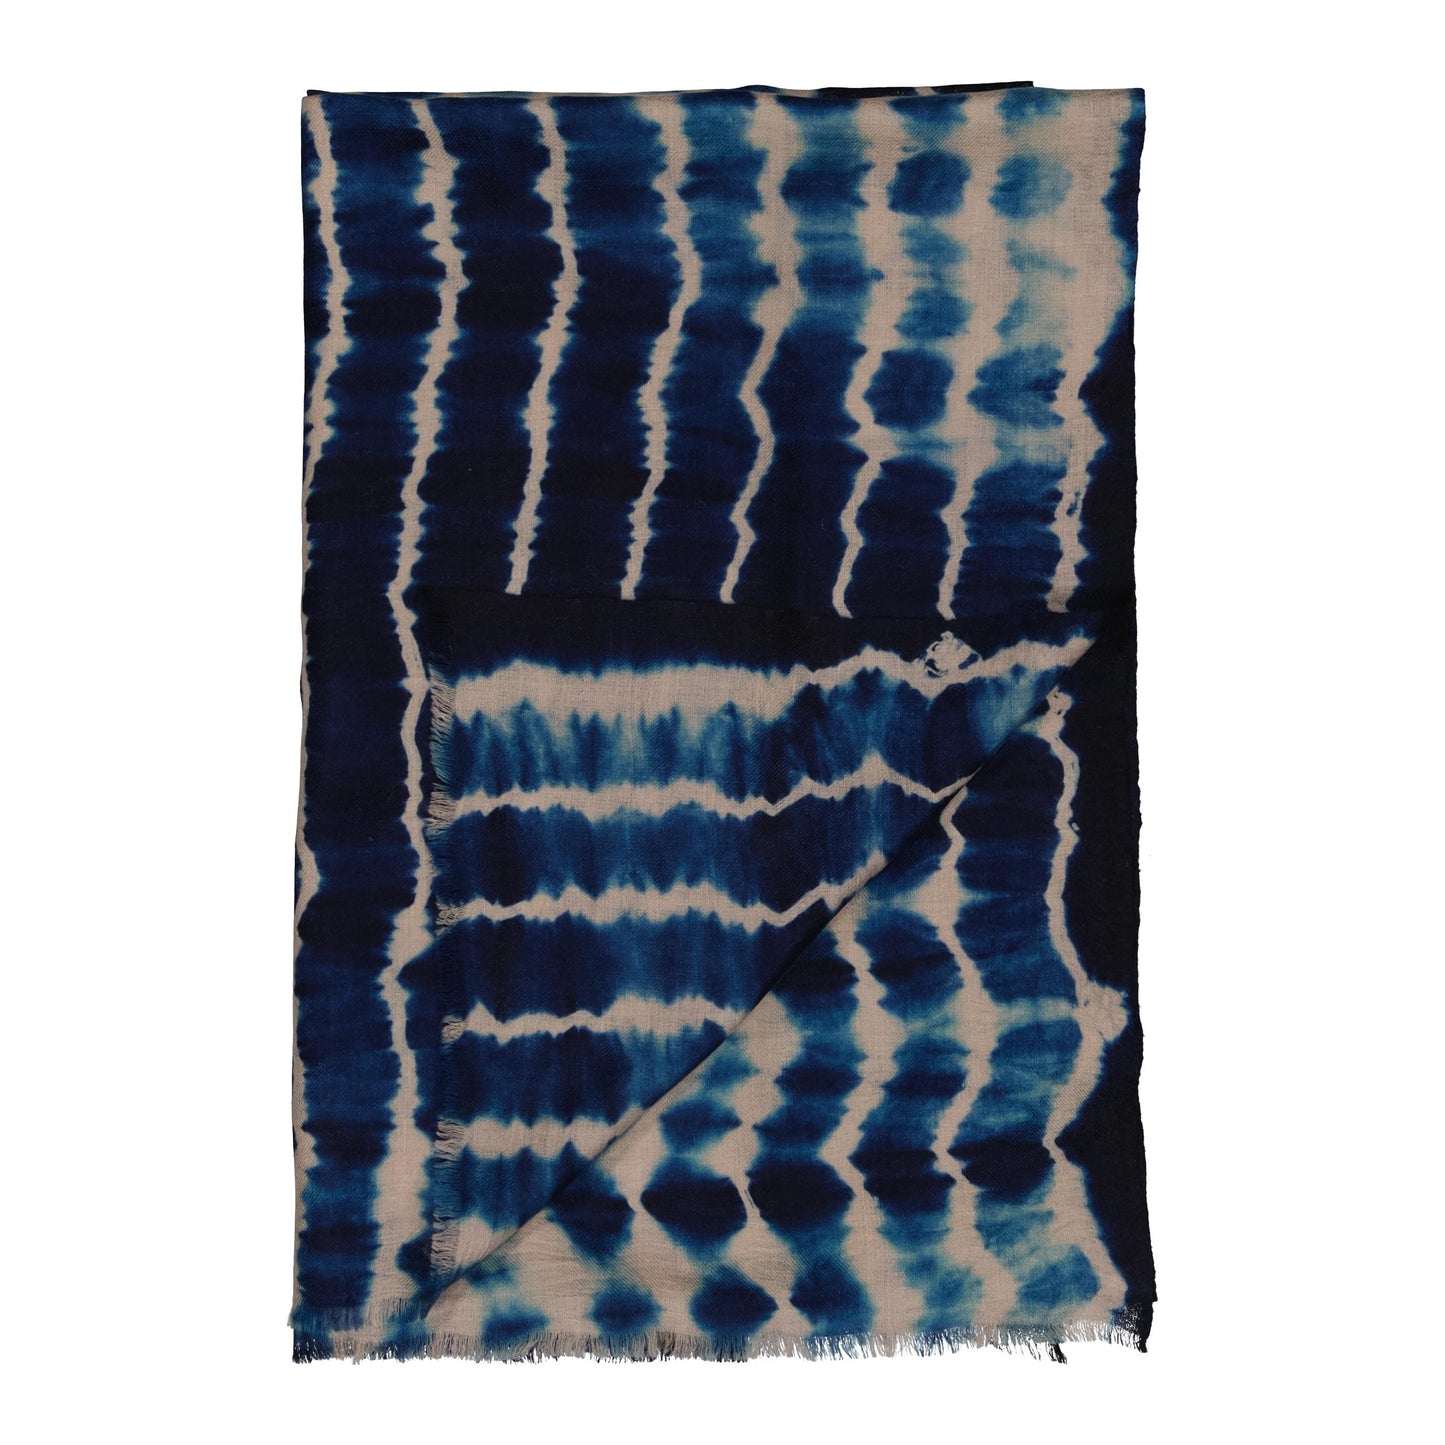 RIVE - shibori cashmere shawl INDIGO BLUE